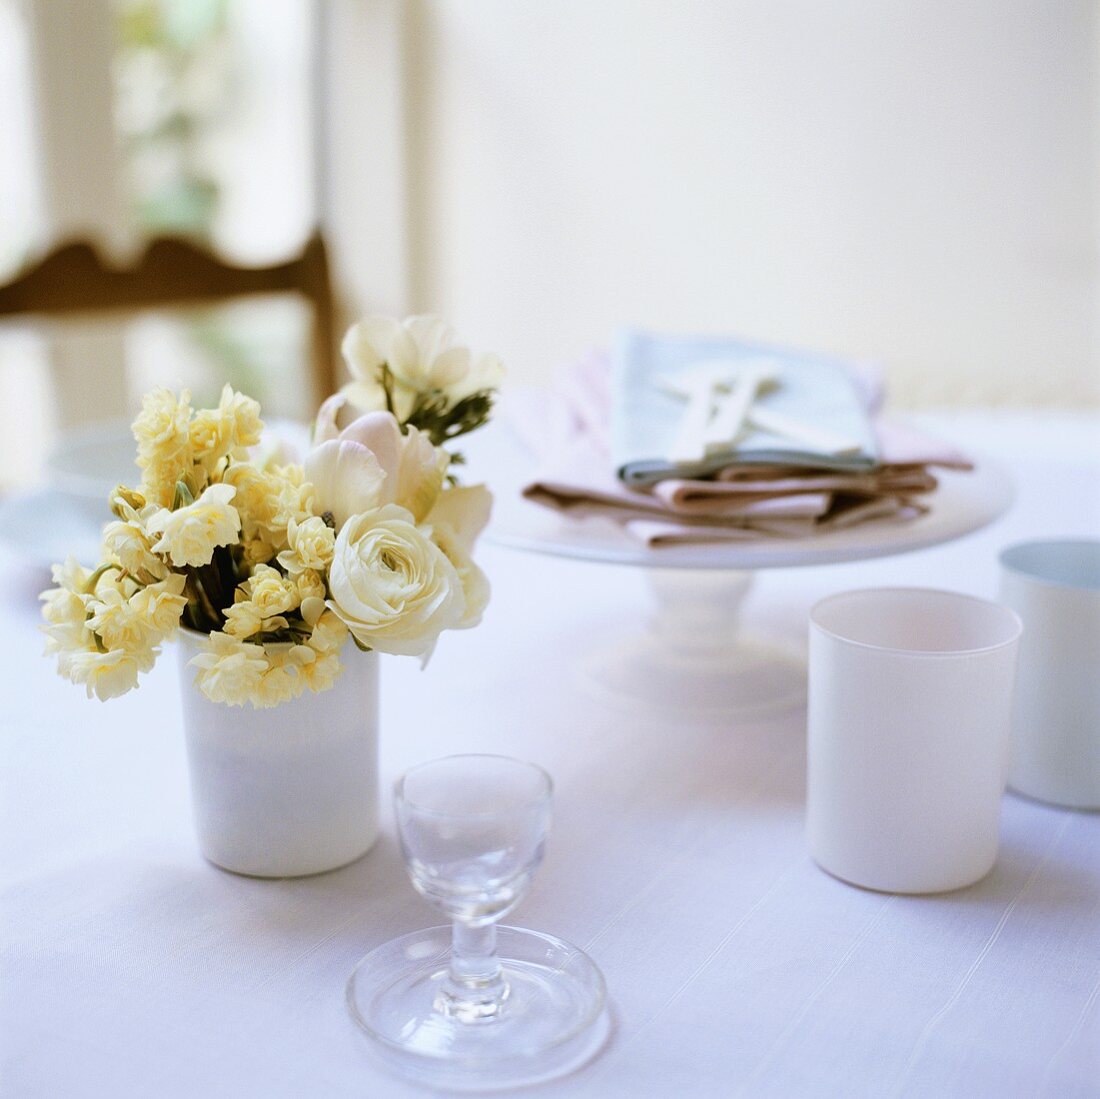 Tisch mit Geschirr, Servietten und Frühlingsstrauss